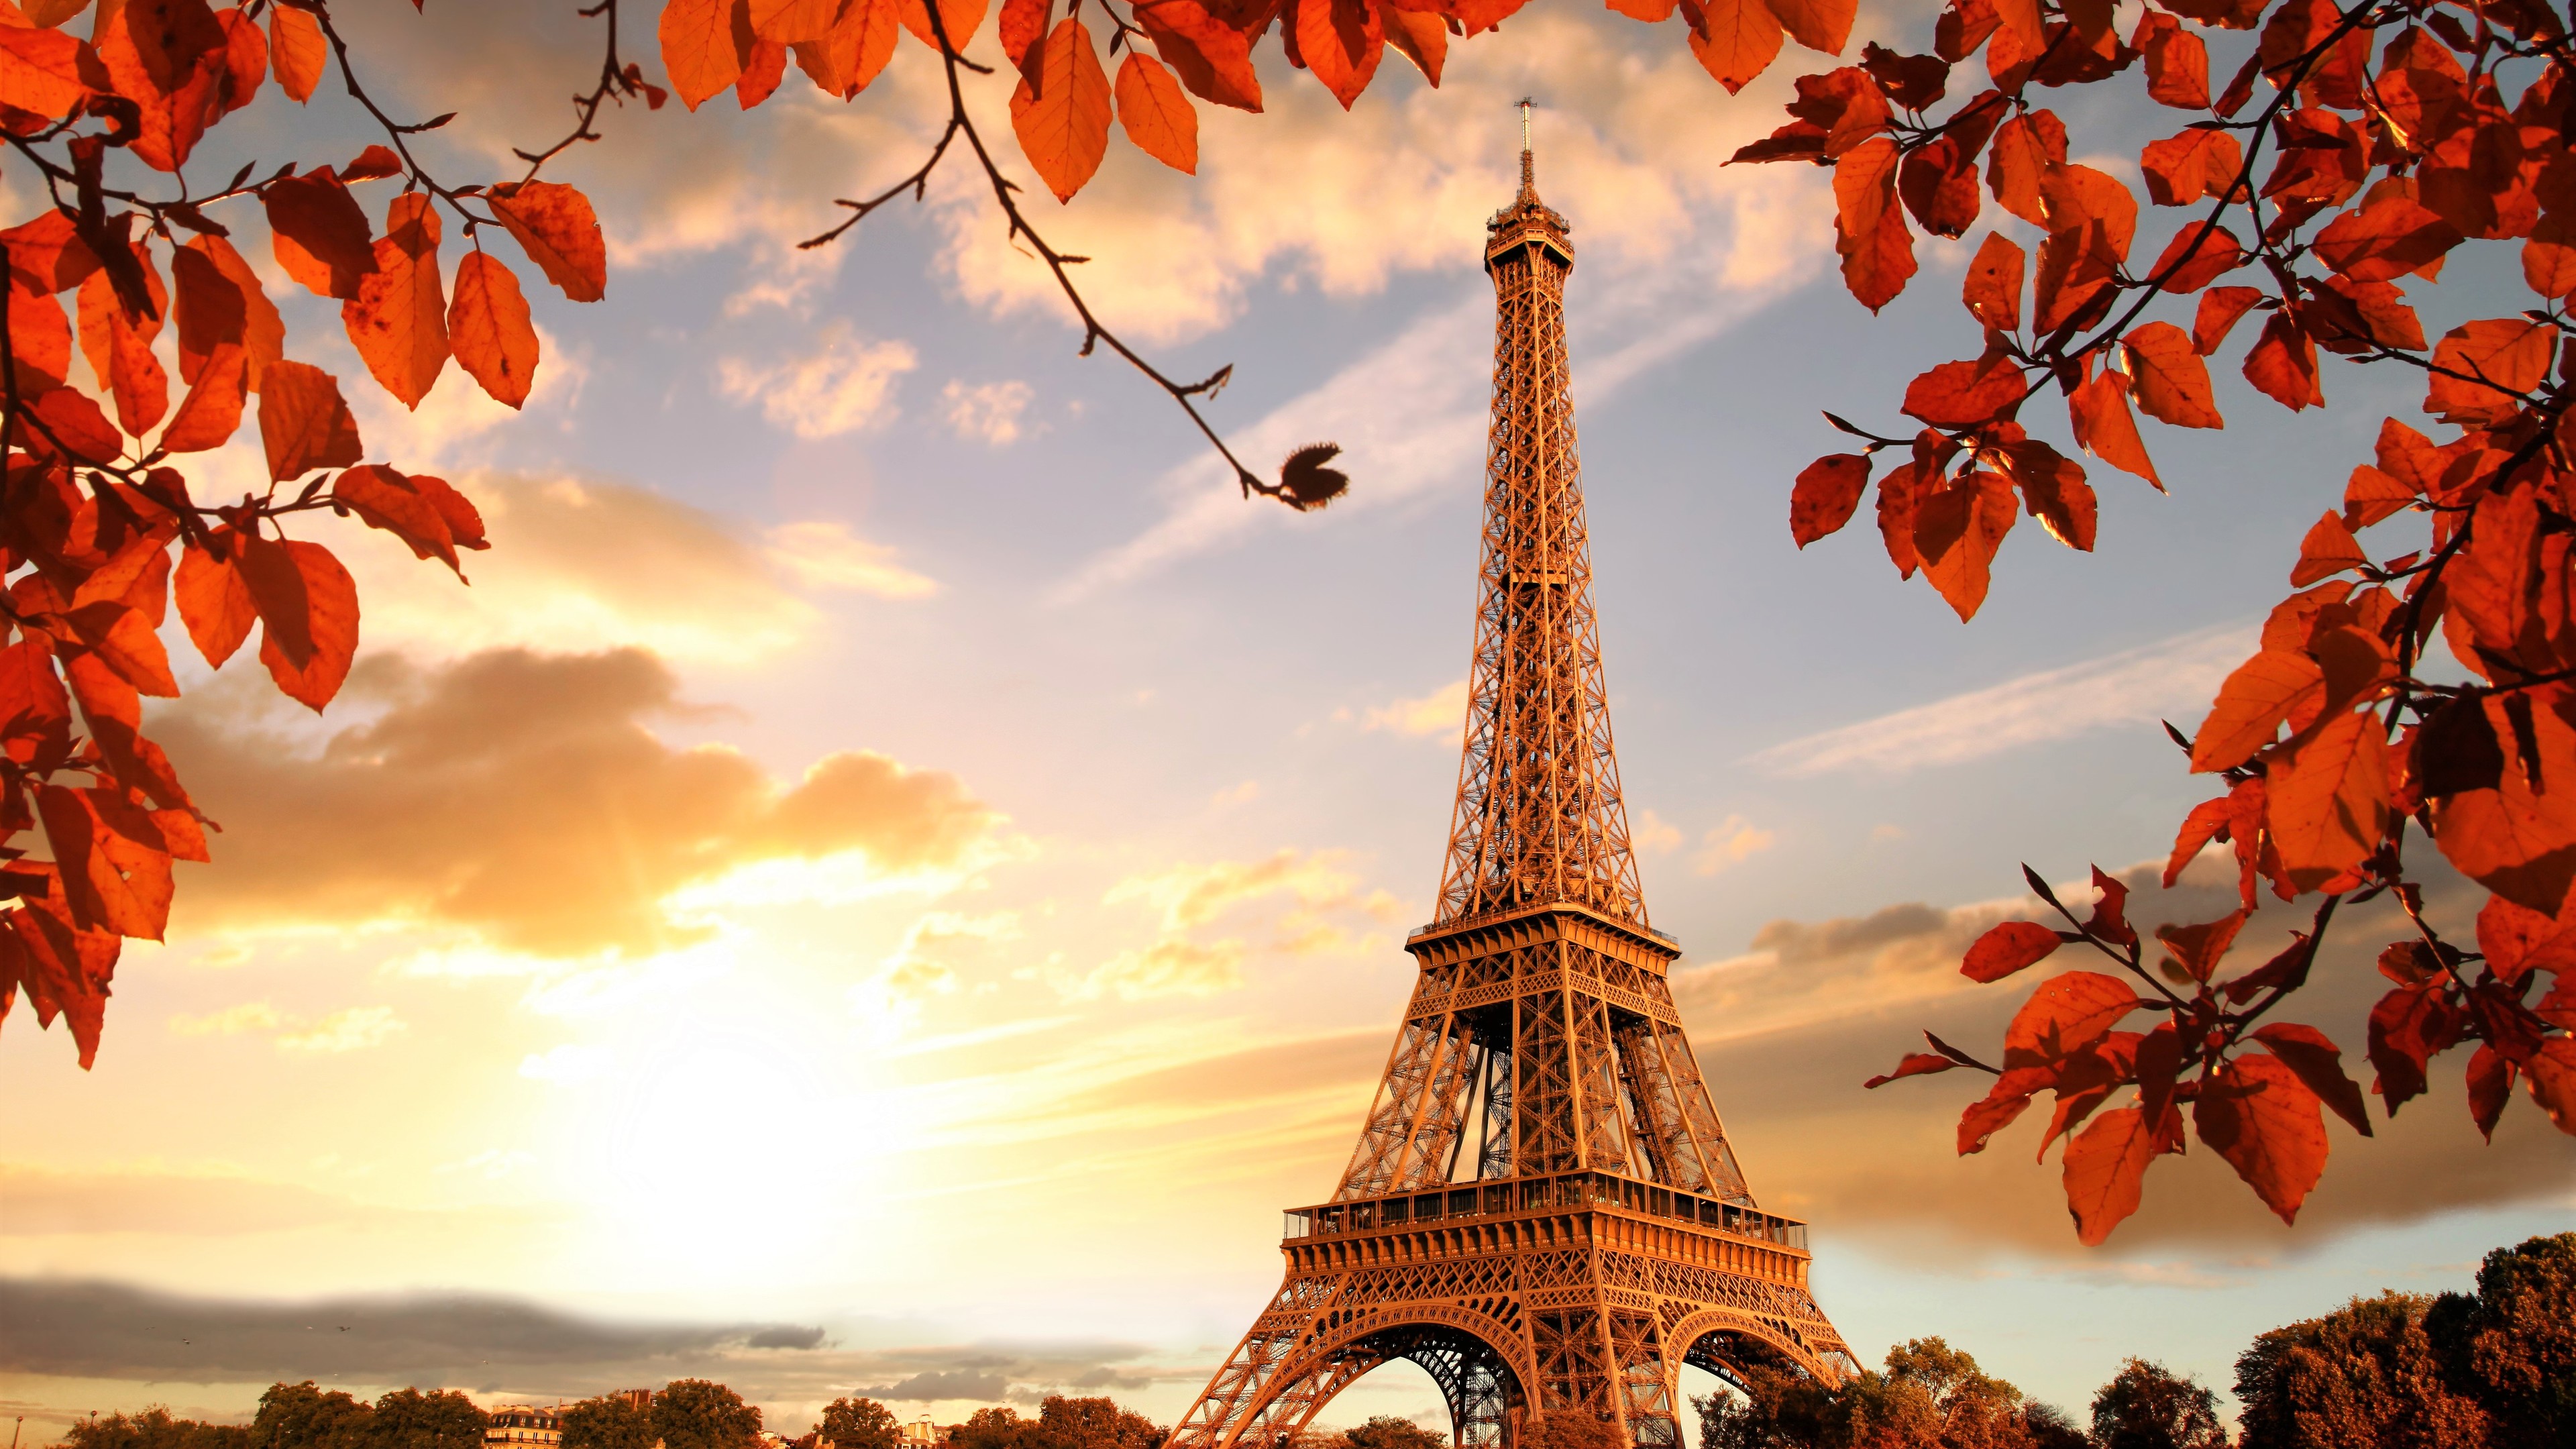 Eiffel Tower Autumn Season 4k 5k - Eiffel Tower In Fall - HD Wallpaper 